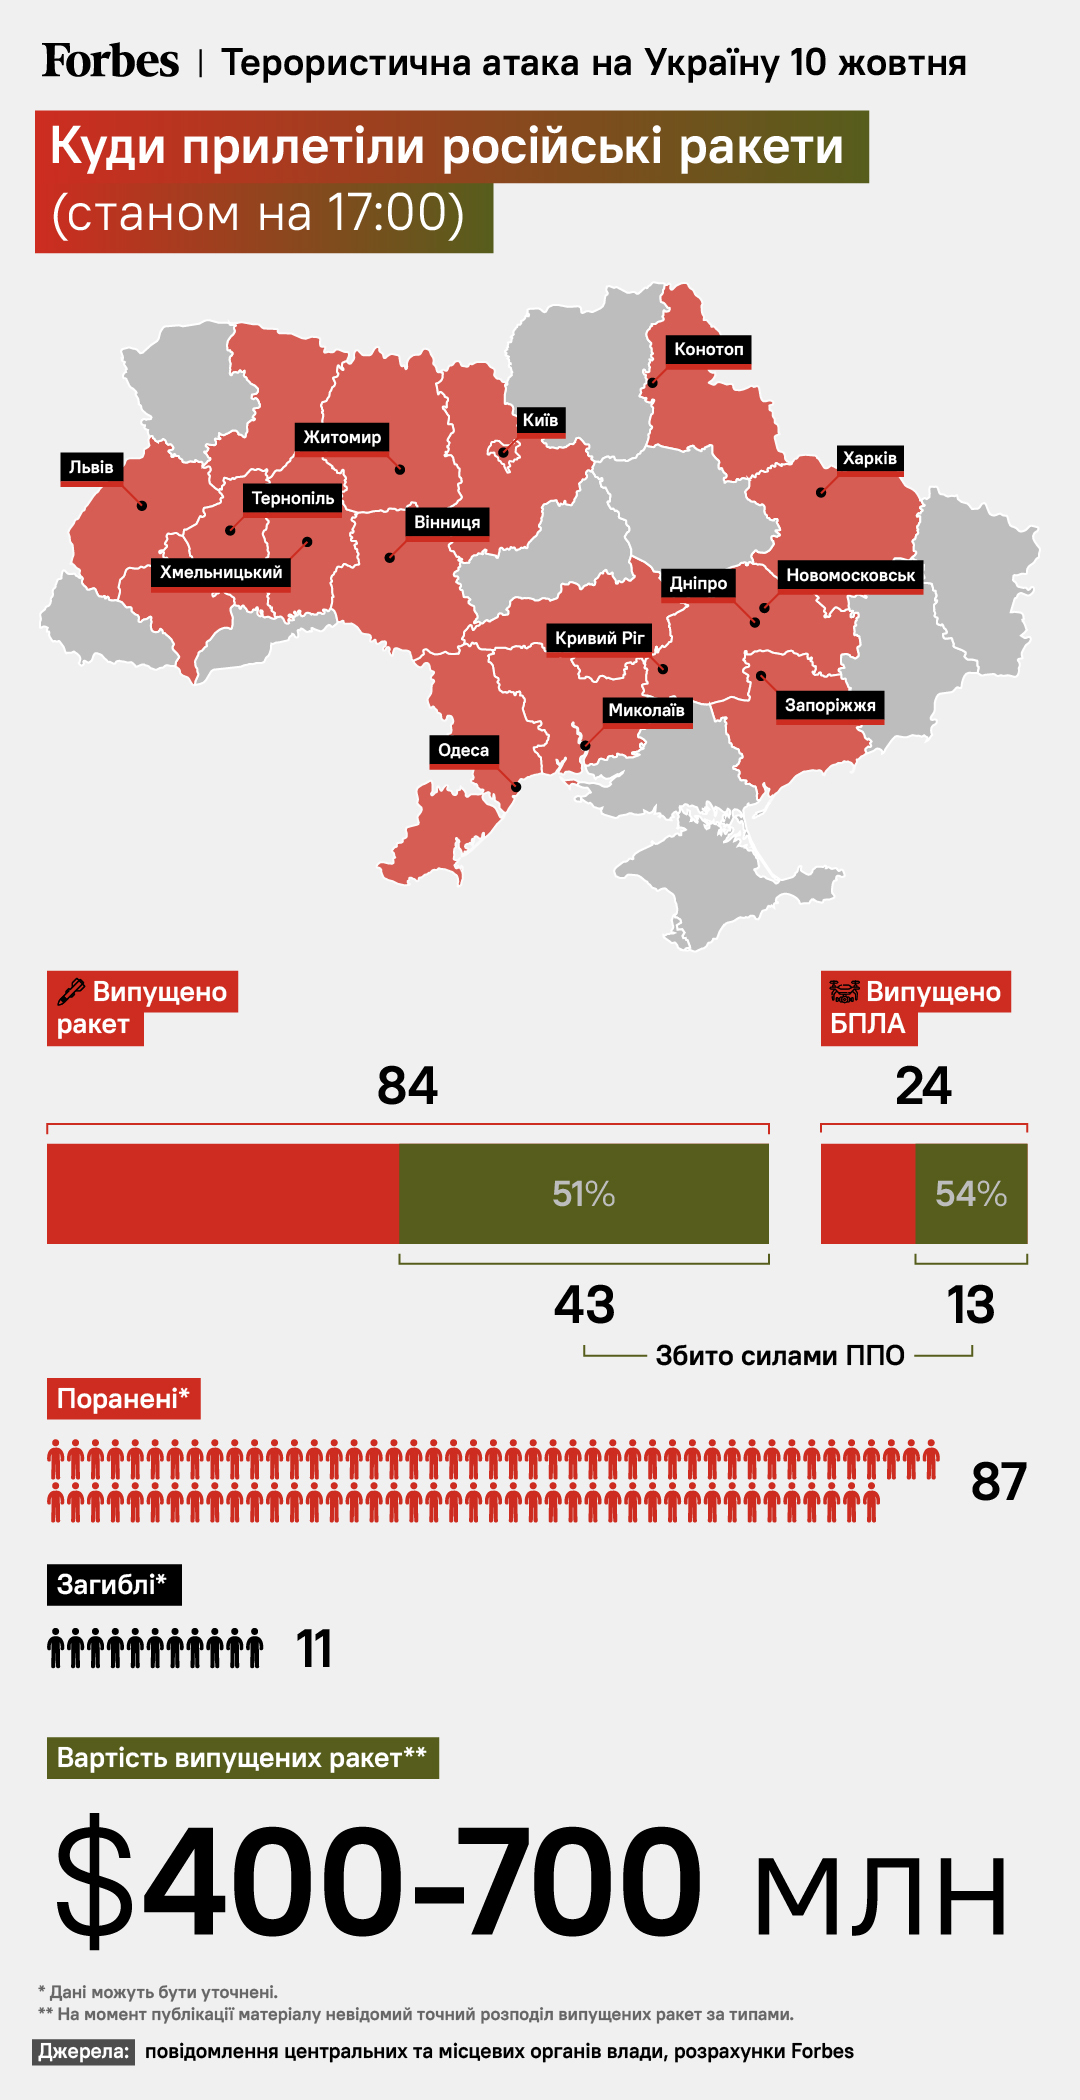 Стало известно, сколько стоила России террористическая атака по Украине 10 октября - фото 2